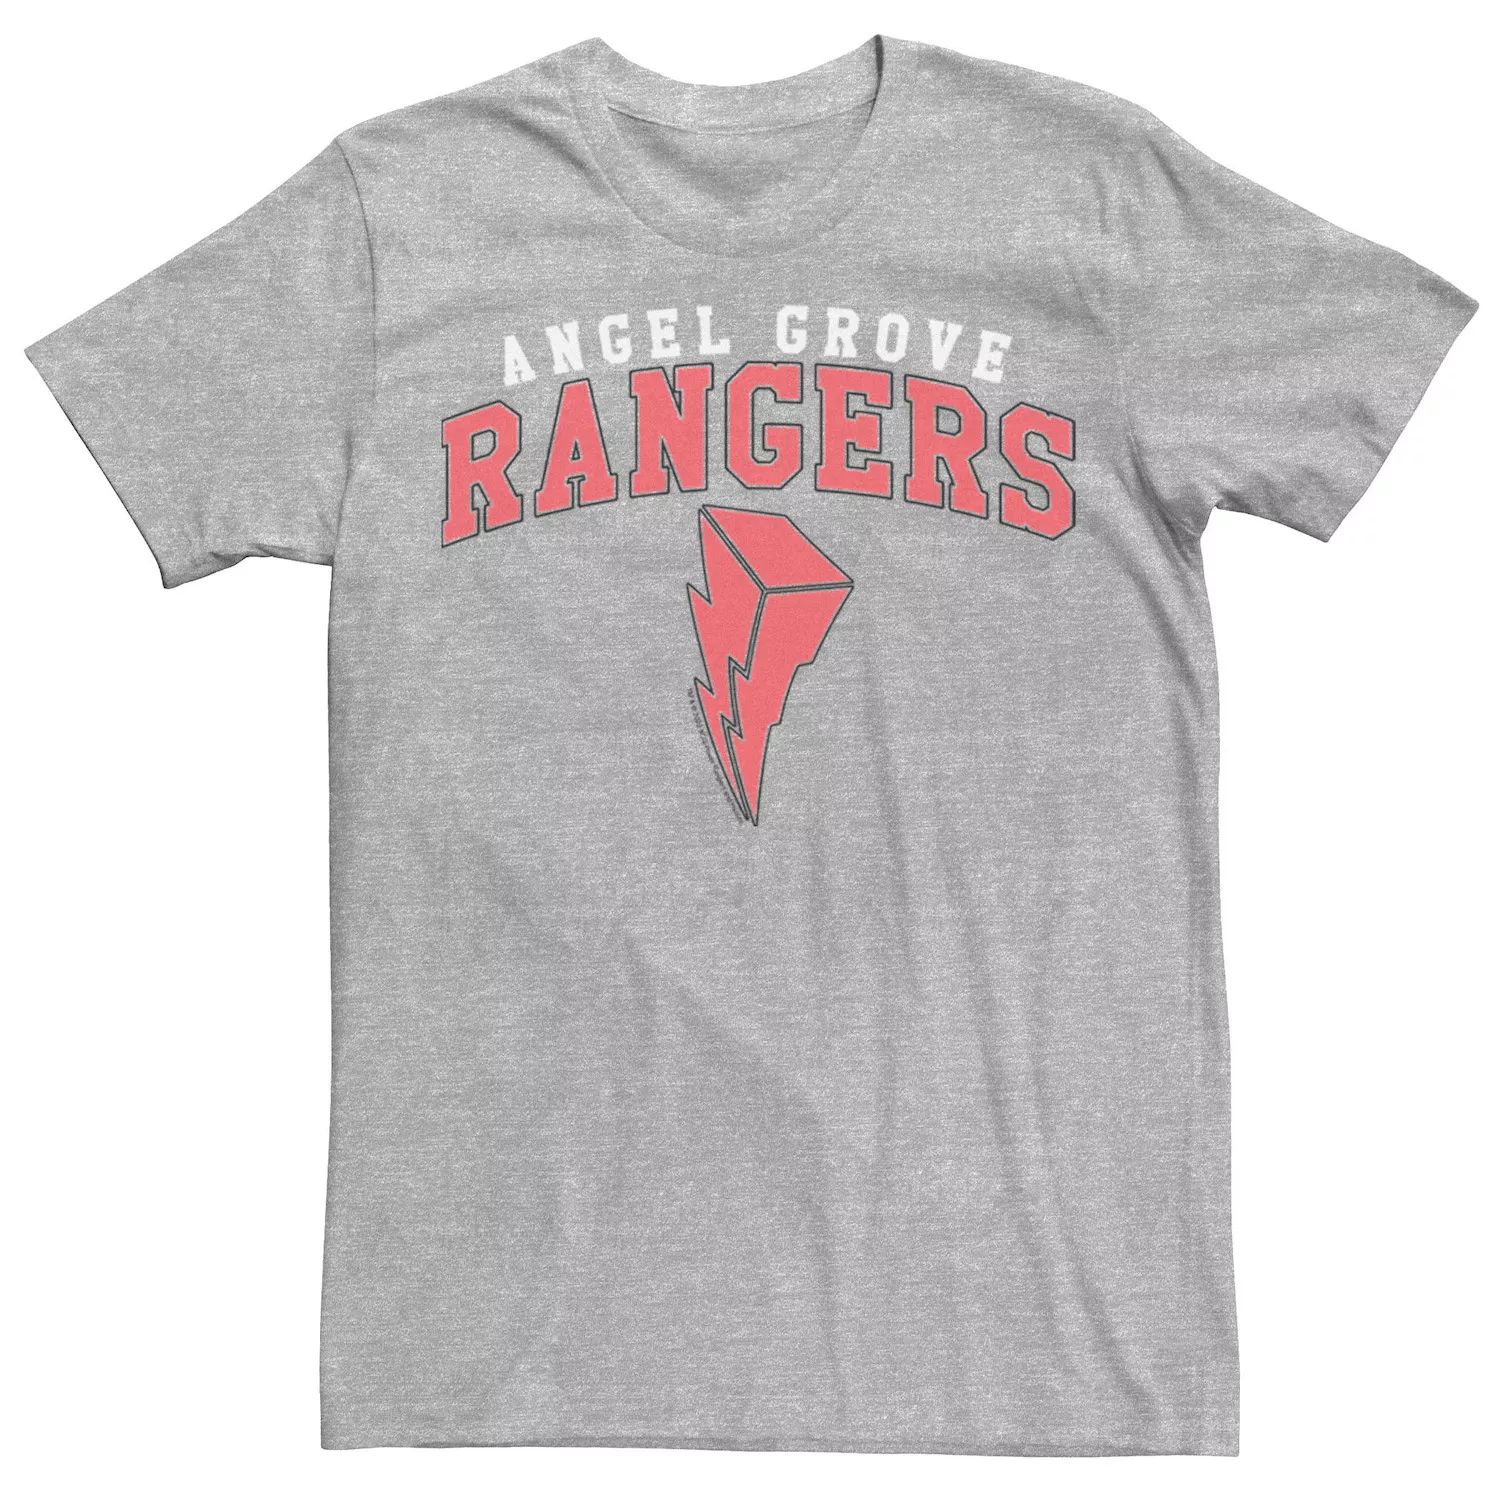 Мужская футболка Power Rangers Angel Grove Ranger Licensed Character grove ultrasonic ranger плата датчика ультразвукового сонара